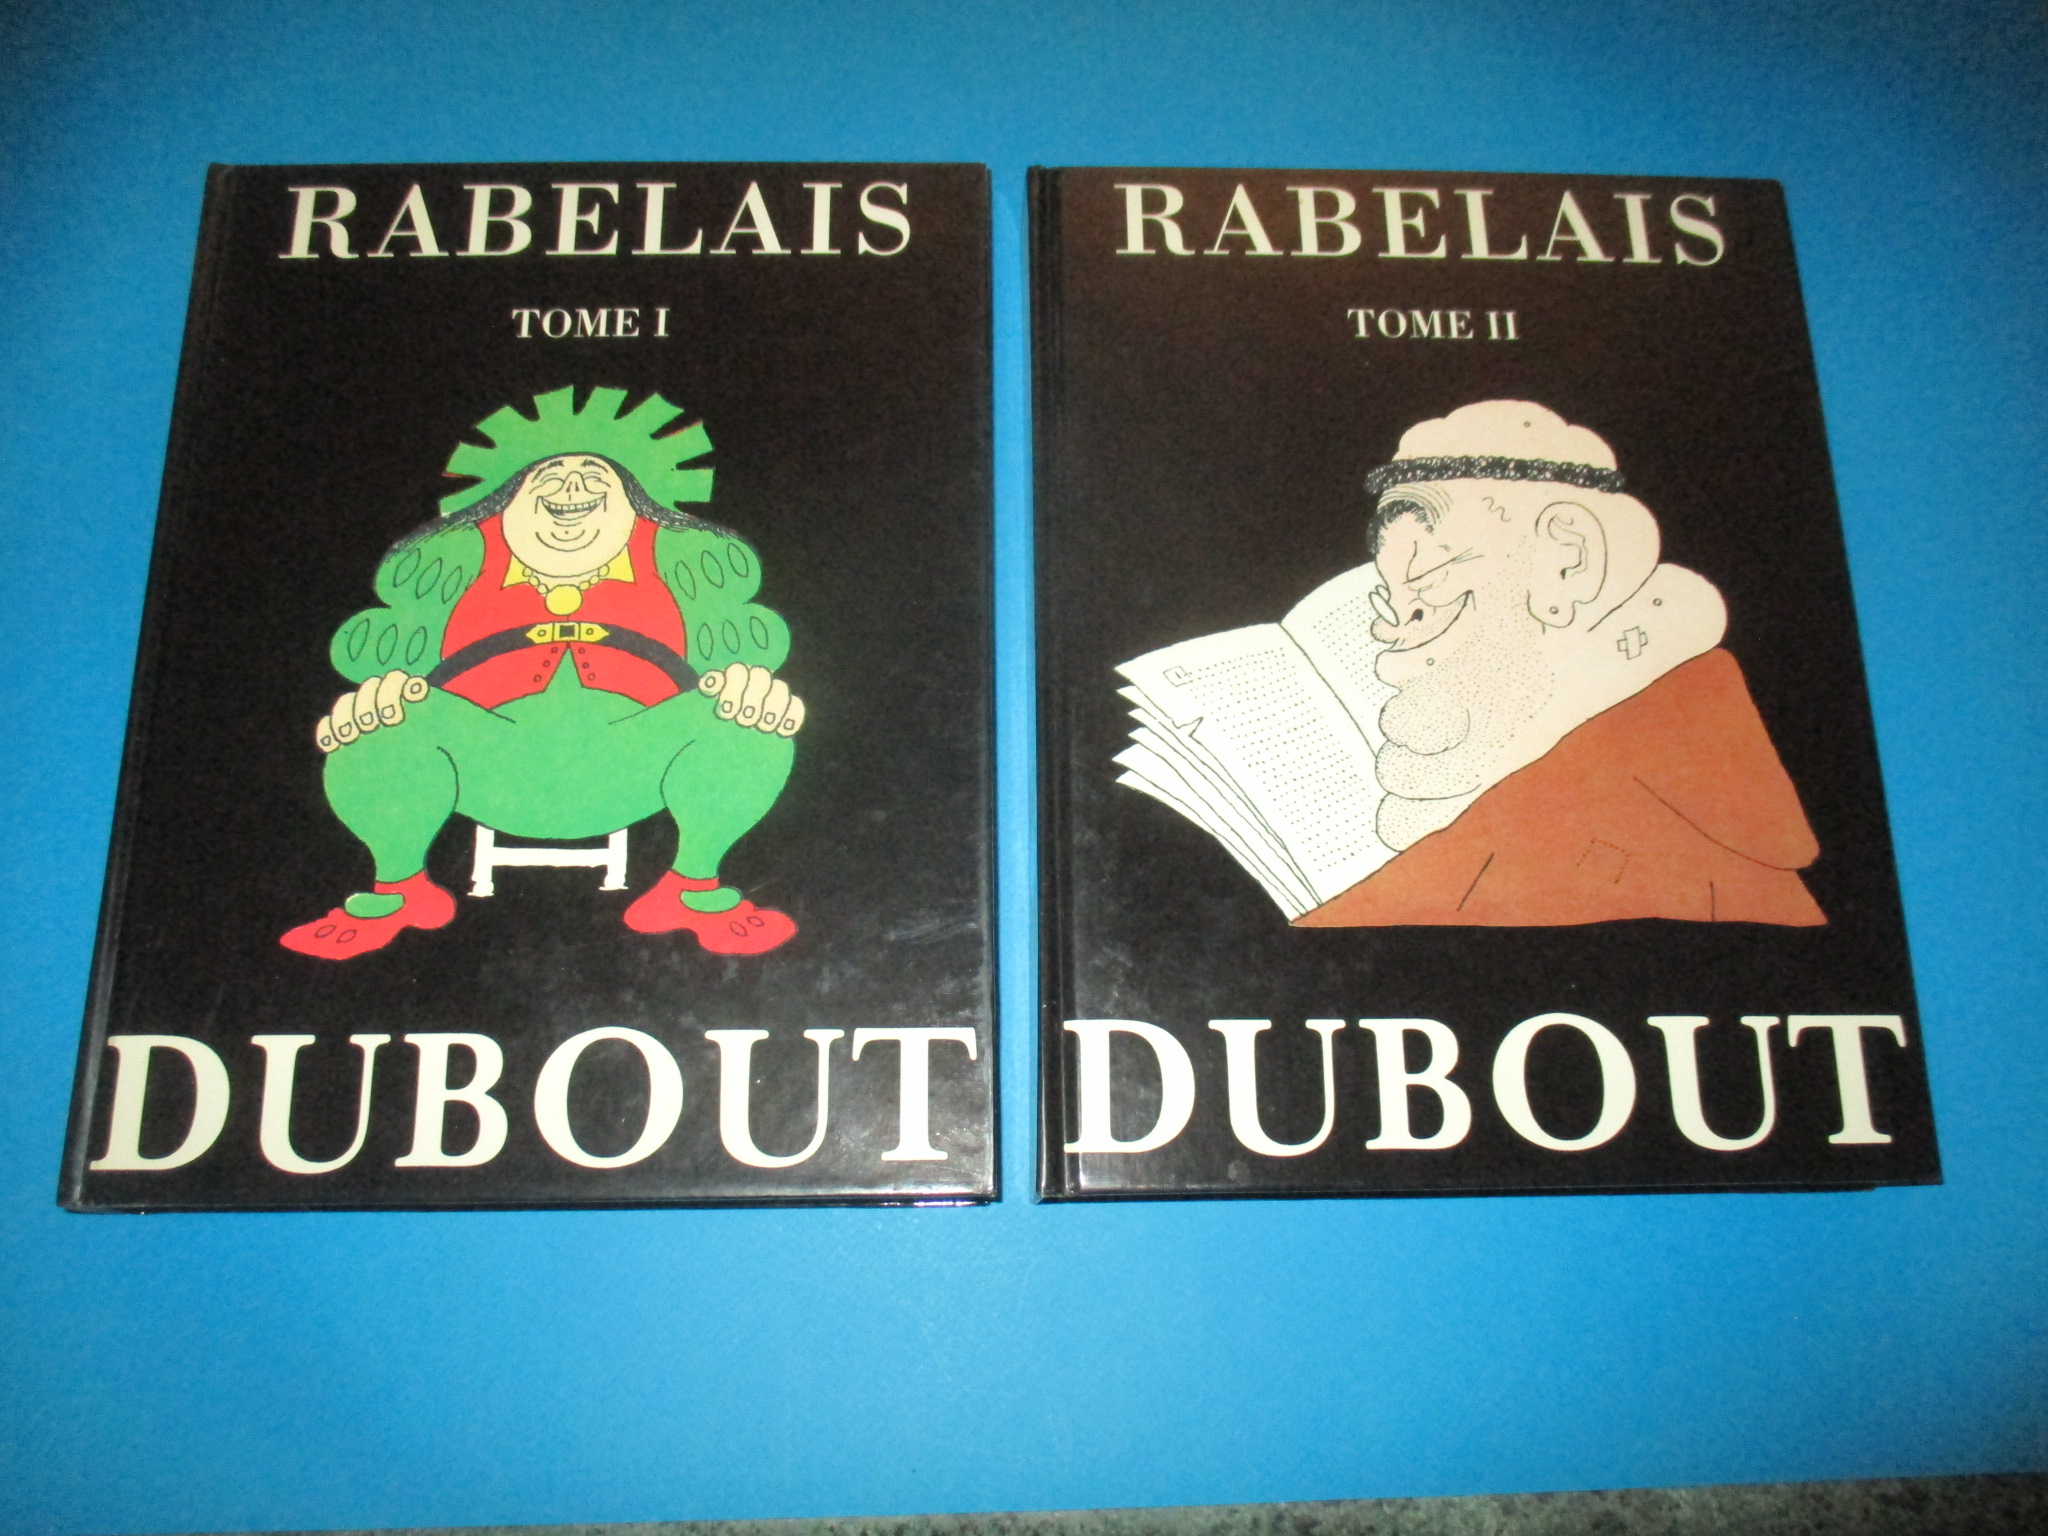 Rabelais, Gargantua et Pantagruel, Illustrations de Dubout, Michèle Trinckvel 1993